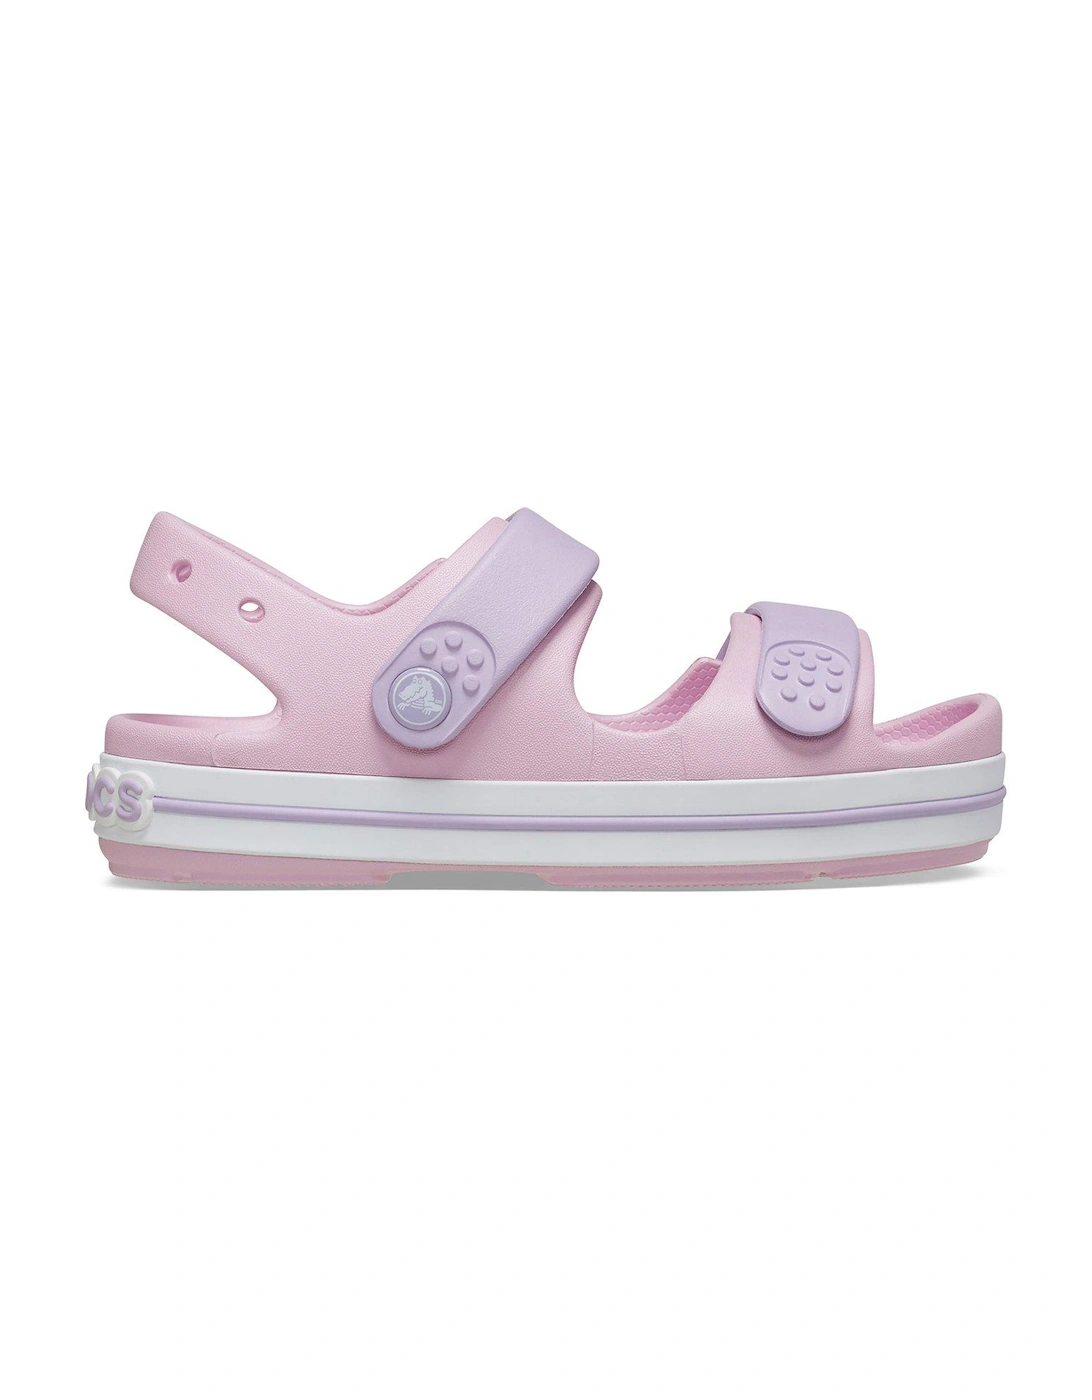 Ballerina/lavender Crocband Cruiser Sandal, 7 of 6